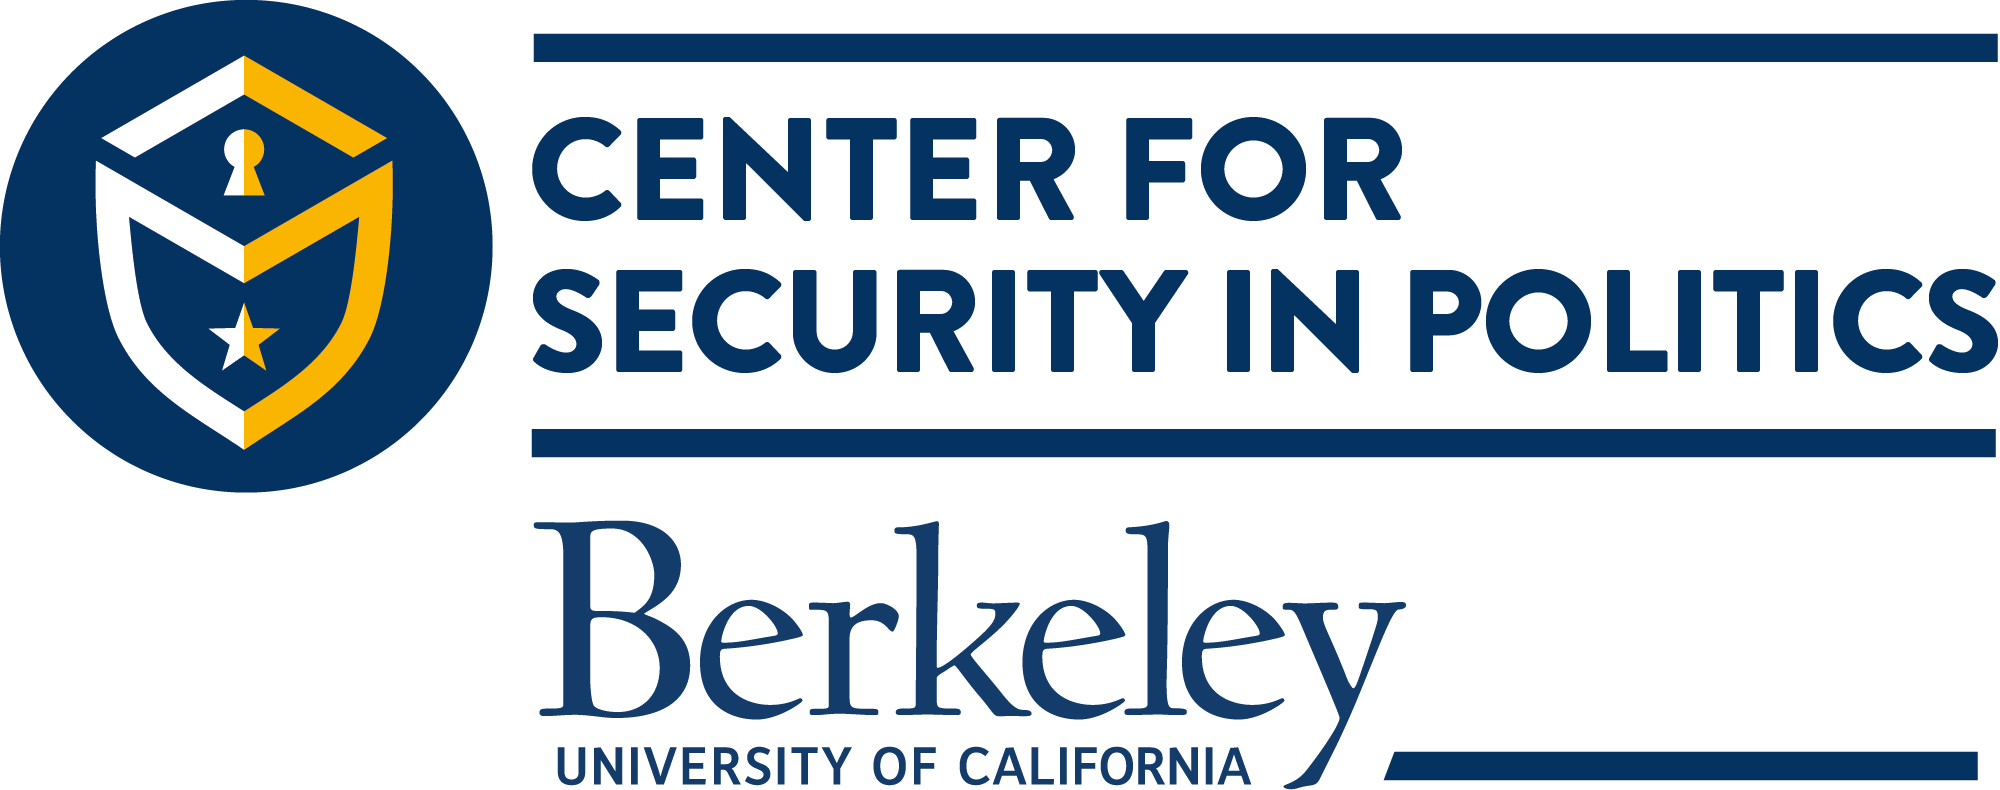 CSP Berkeley